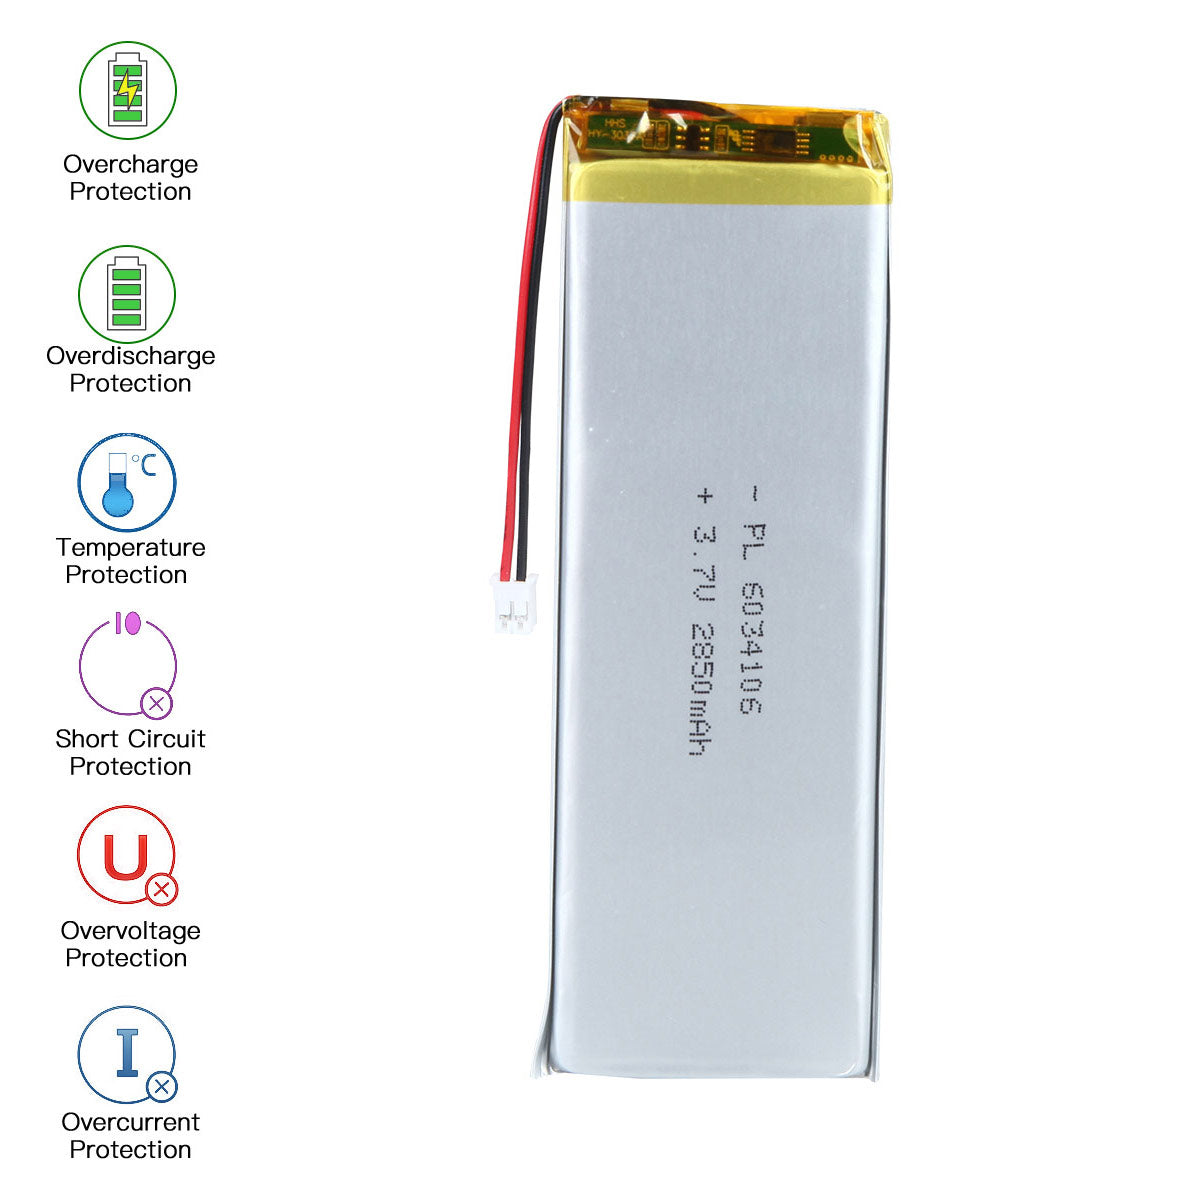 3.7V 2850mAh 6034106 Batterie lithium-polymère rechargeable Longueur 108mm